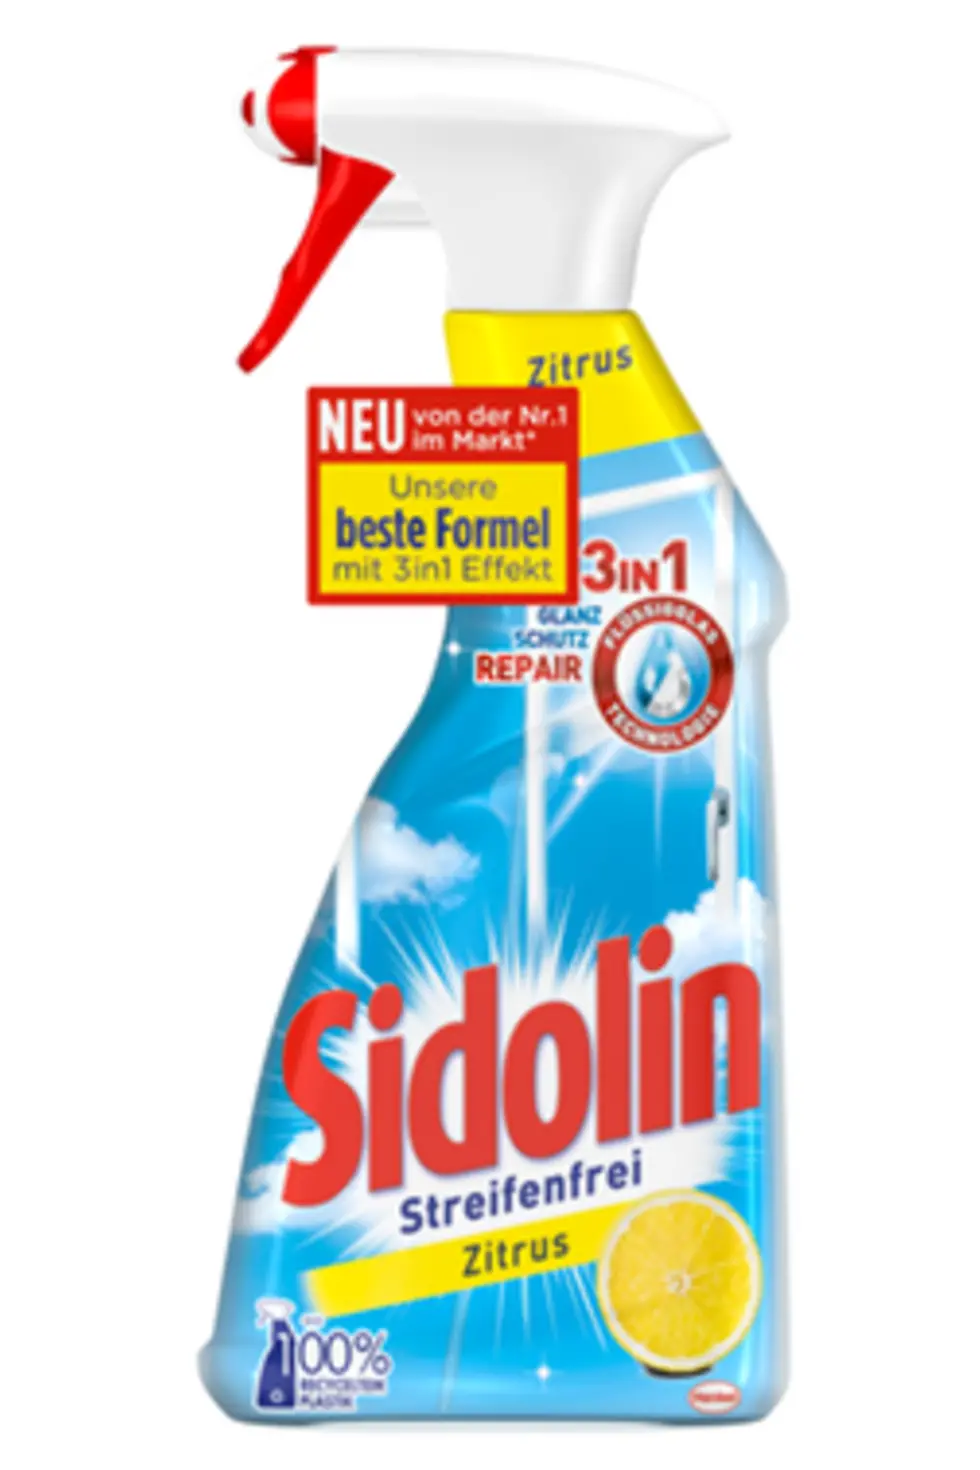 Das neue Sidolin Streifenfrei Zitrus. 